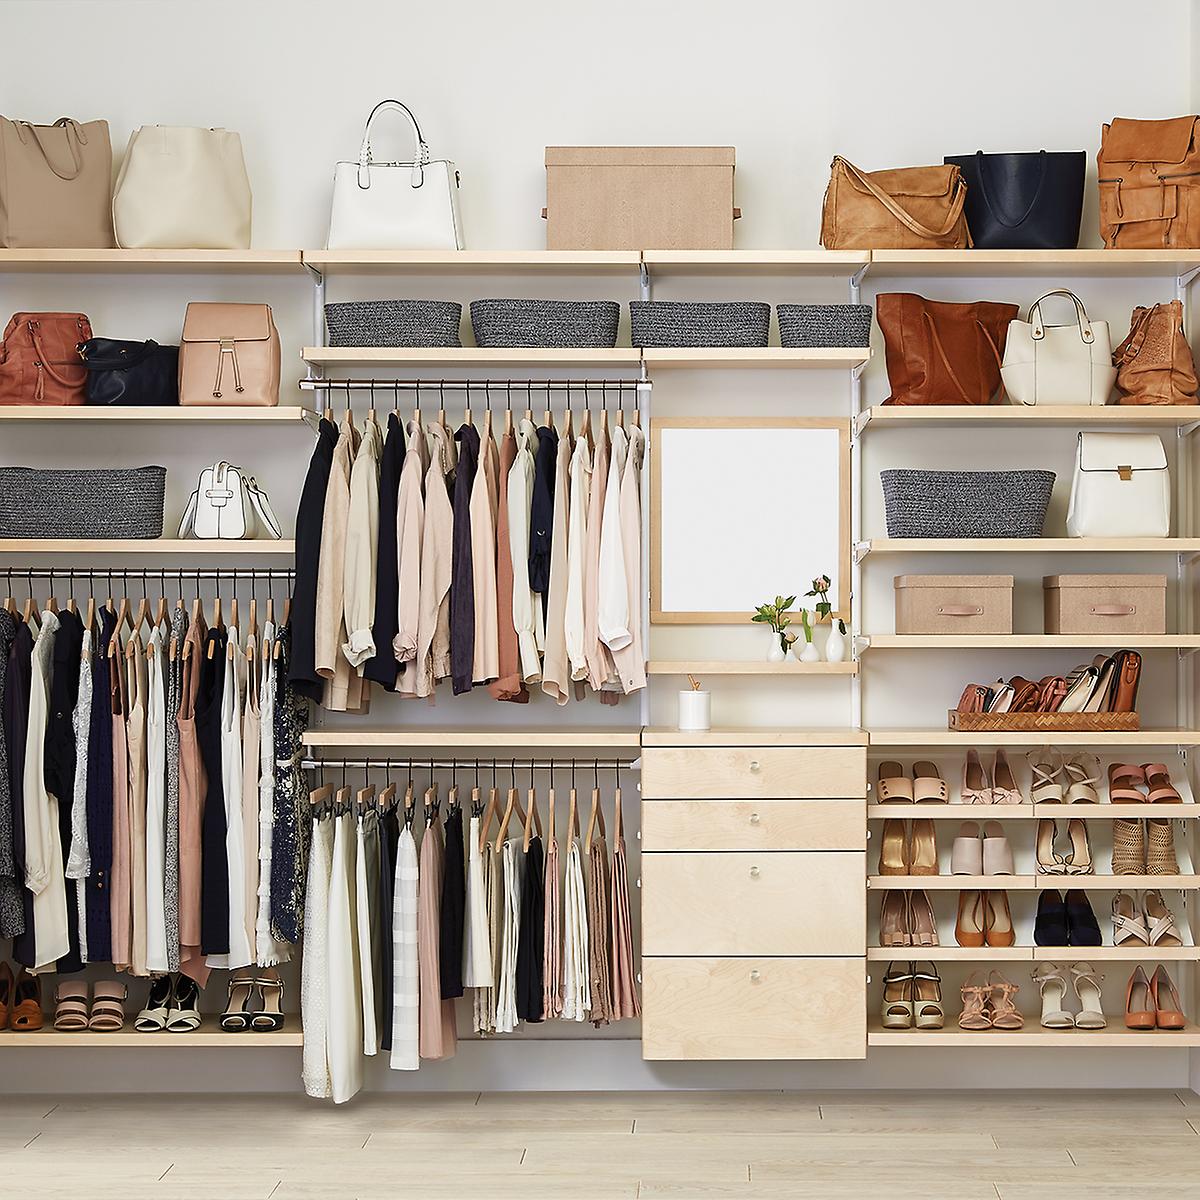 Designing Your Dream Closet on a Budget - Melamine Closet Organizers